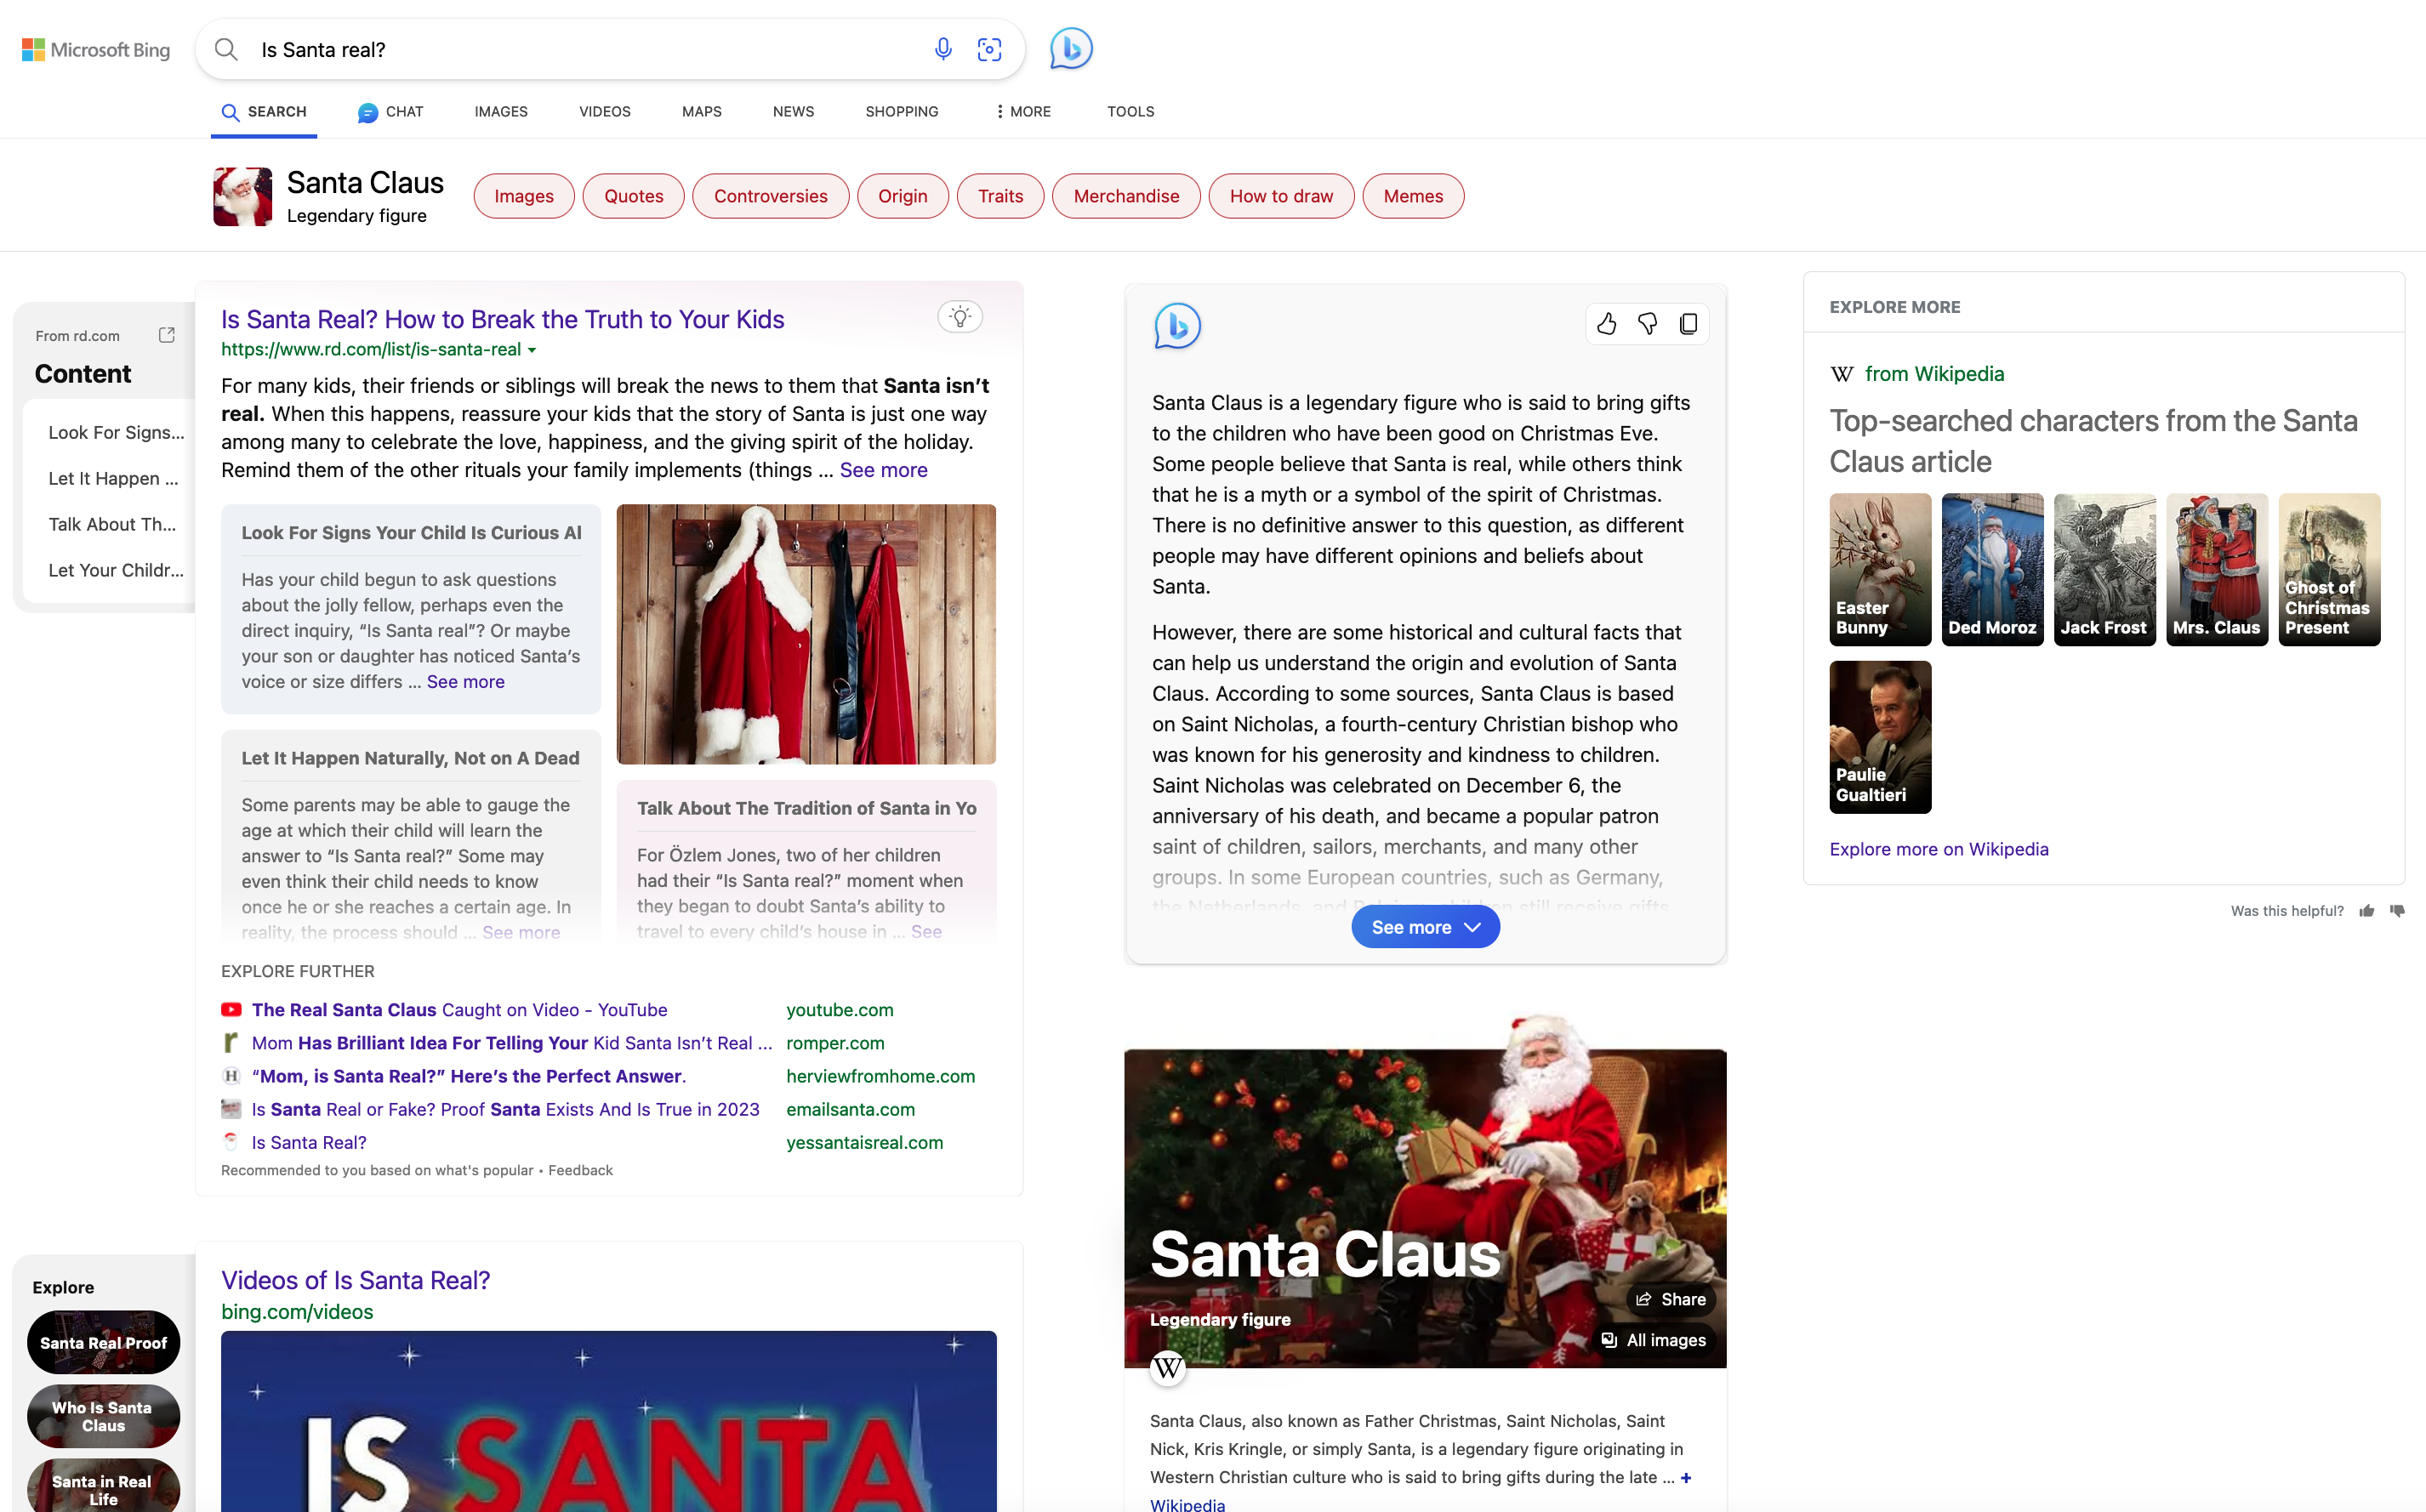 is Santa Real at MIcrosoft Bing